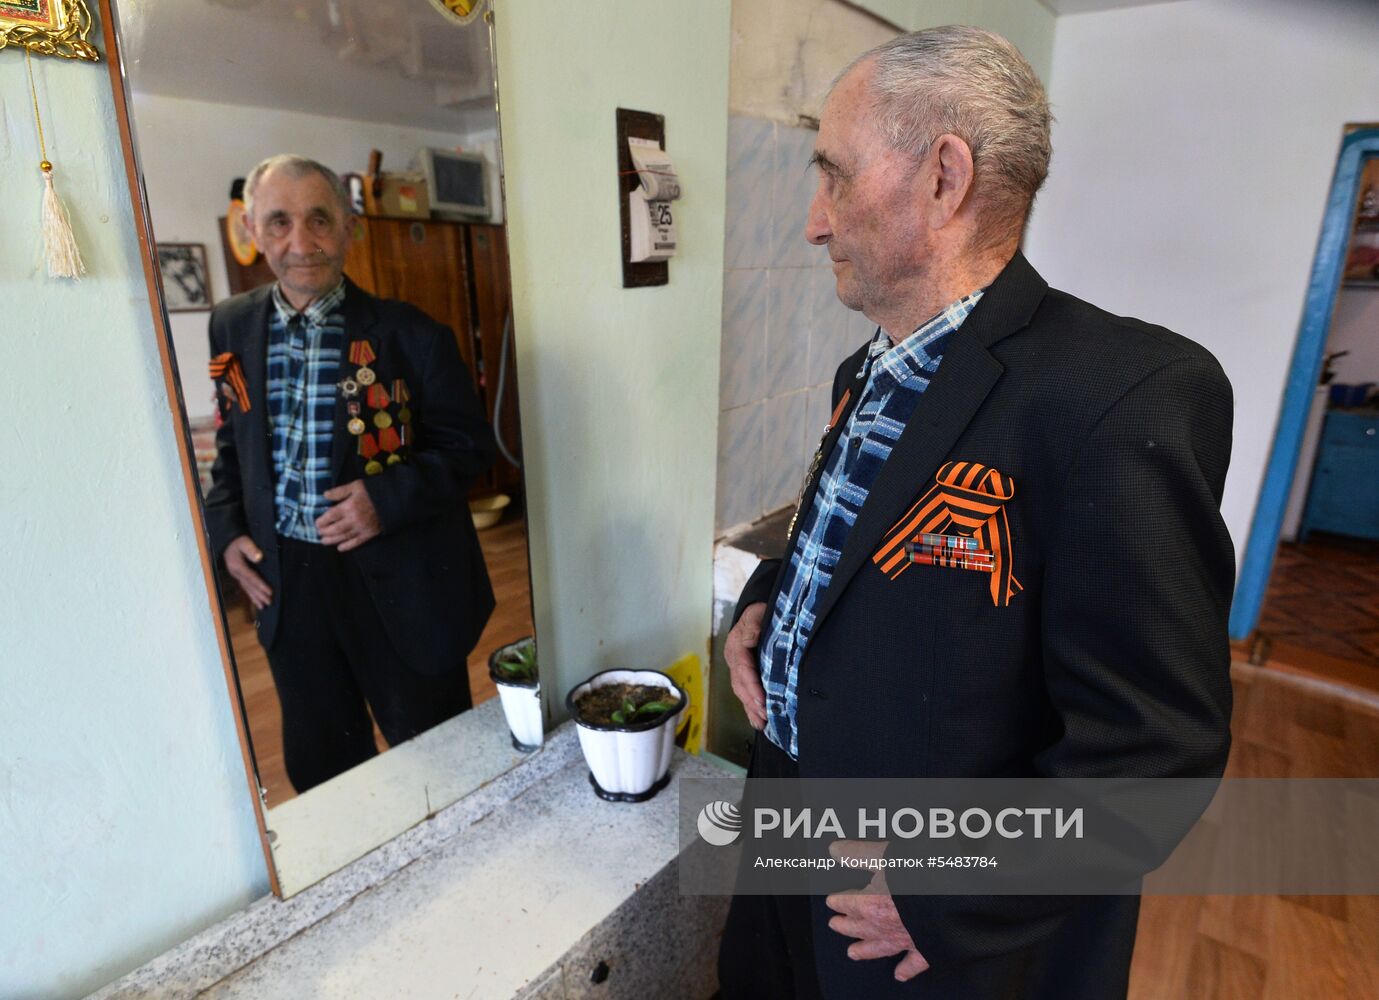 Ветеран ВОВ Шайяхмет Абдулзалилов из Челябинской области